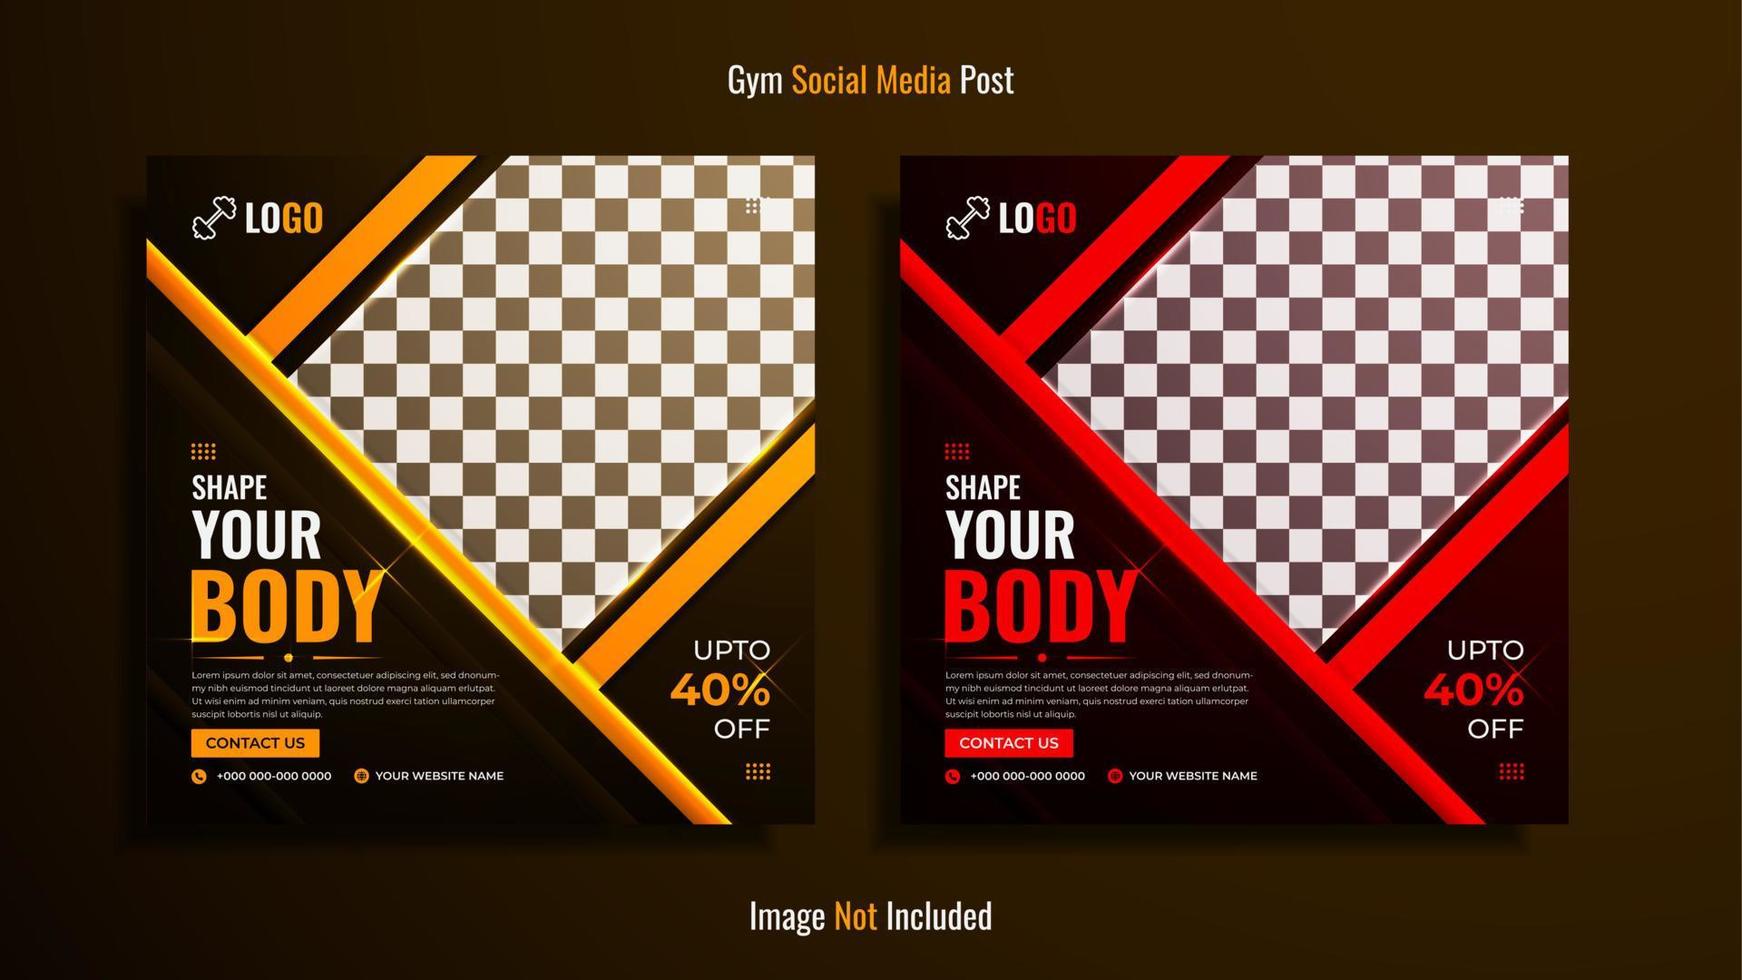 gym en fitness social media post design pack met gele en rode kleurvormen op een donkere achtergrond. vector